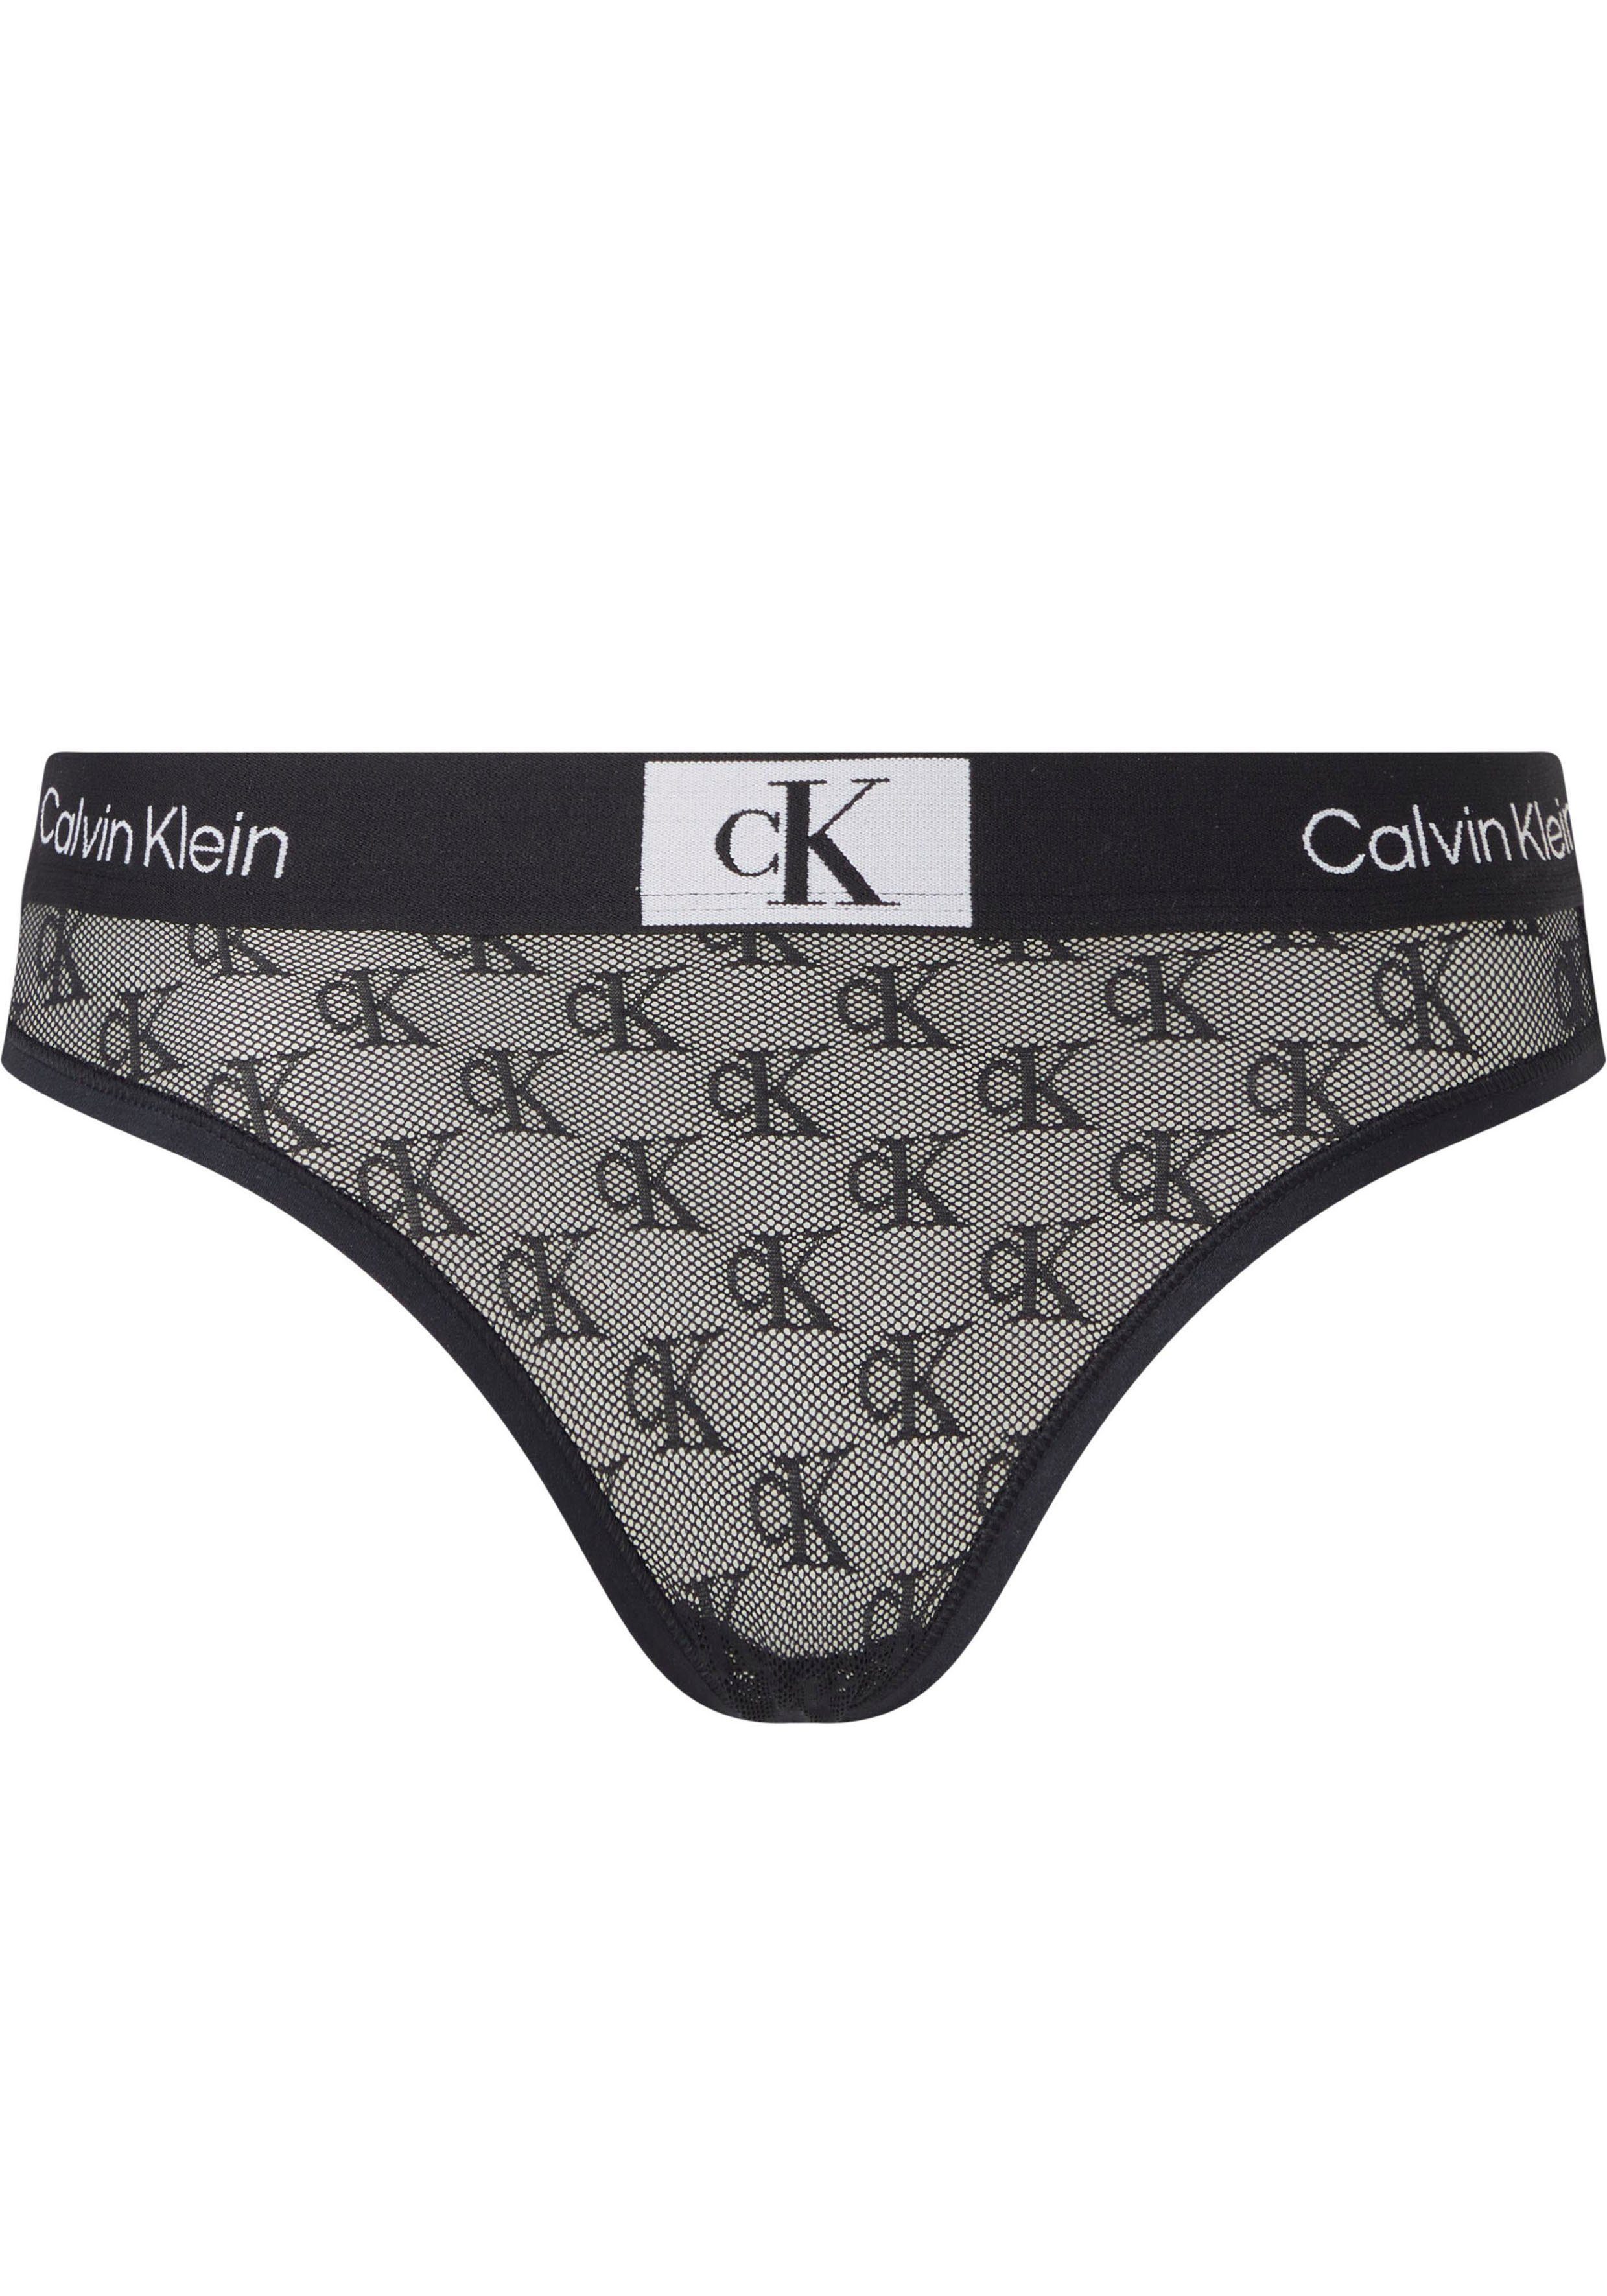 Calvin Klein Underwear Bikinislip MODERN BIKINI mit CK-Monogrammen